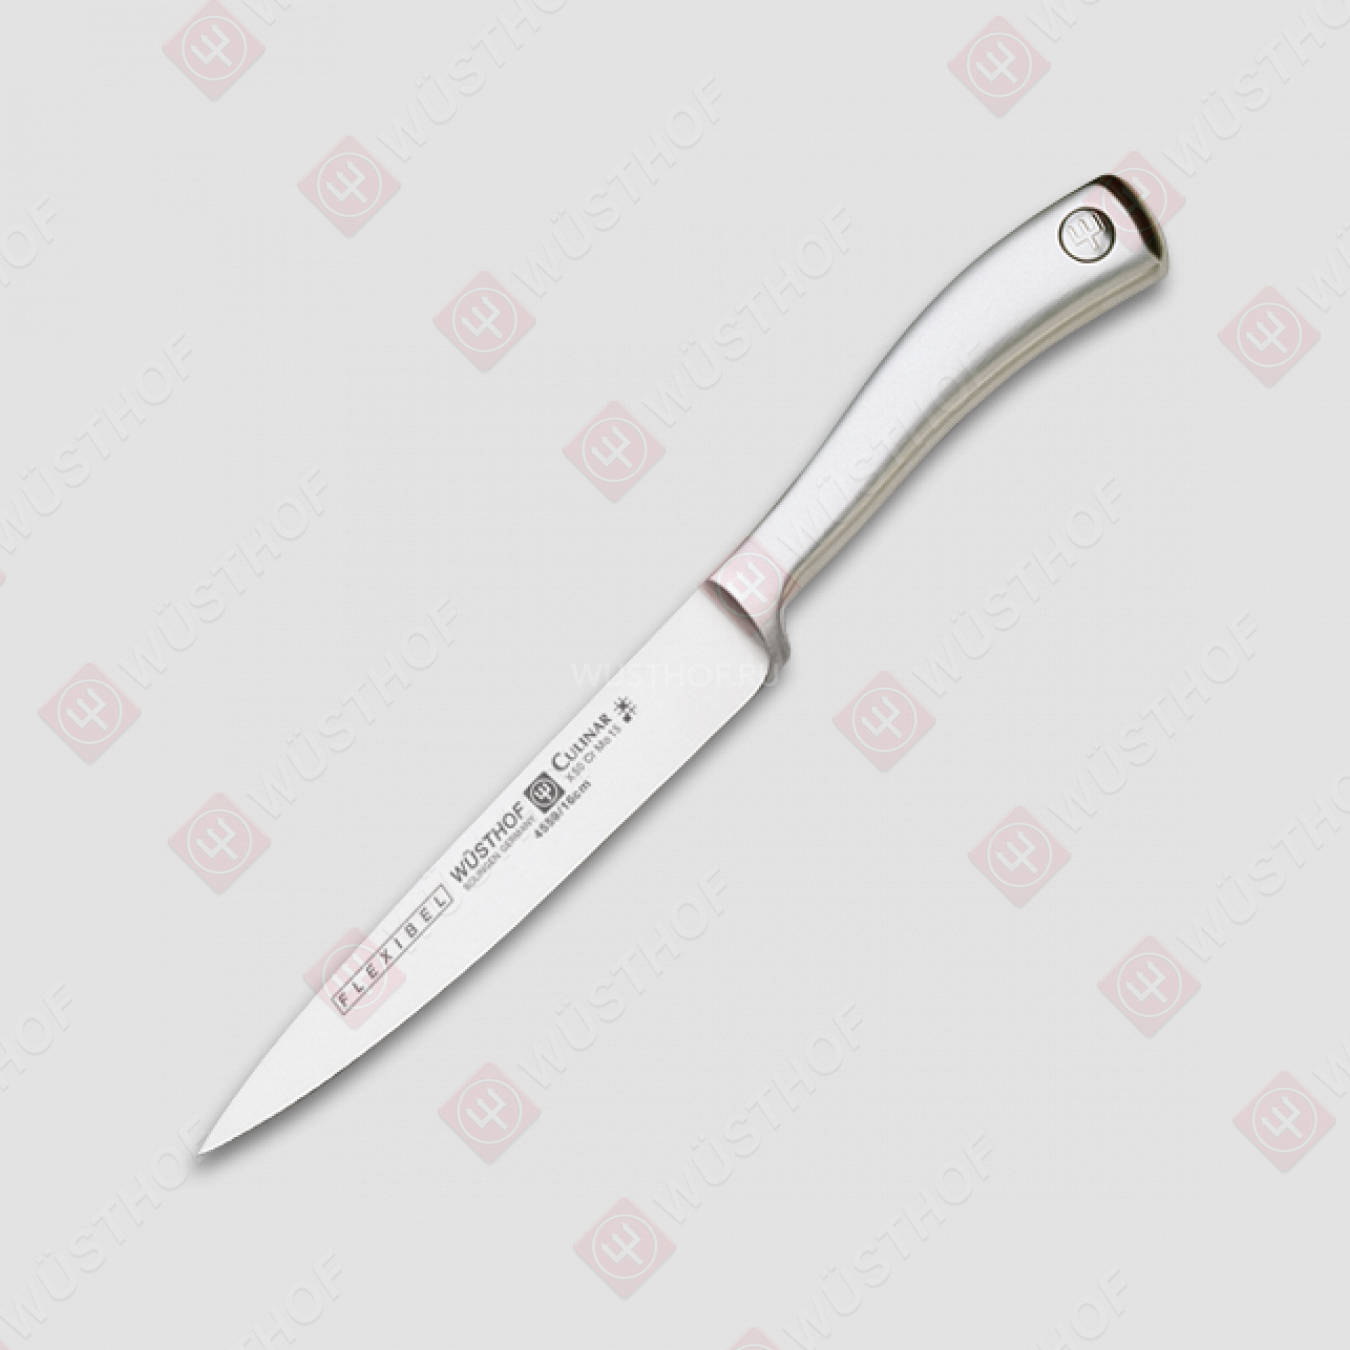 Нож филейный гибкий 16 см, серия Culinar, WUESTHOF, Золинген, Германия